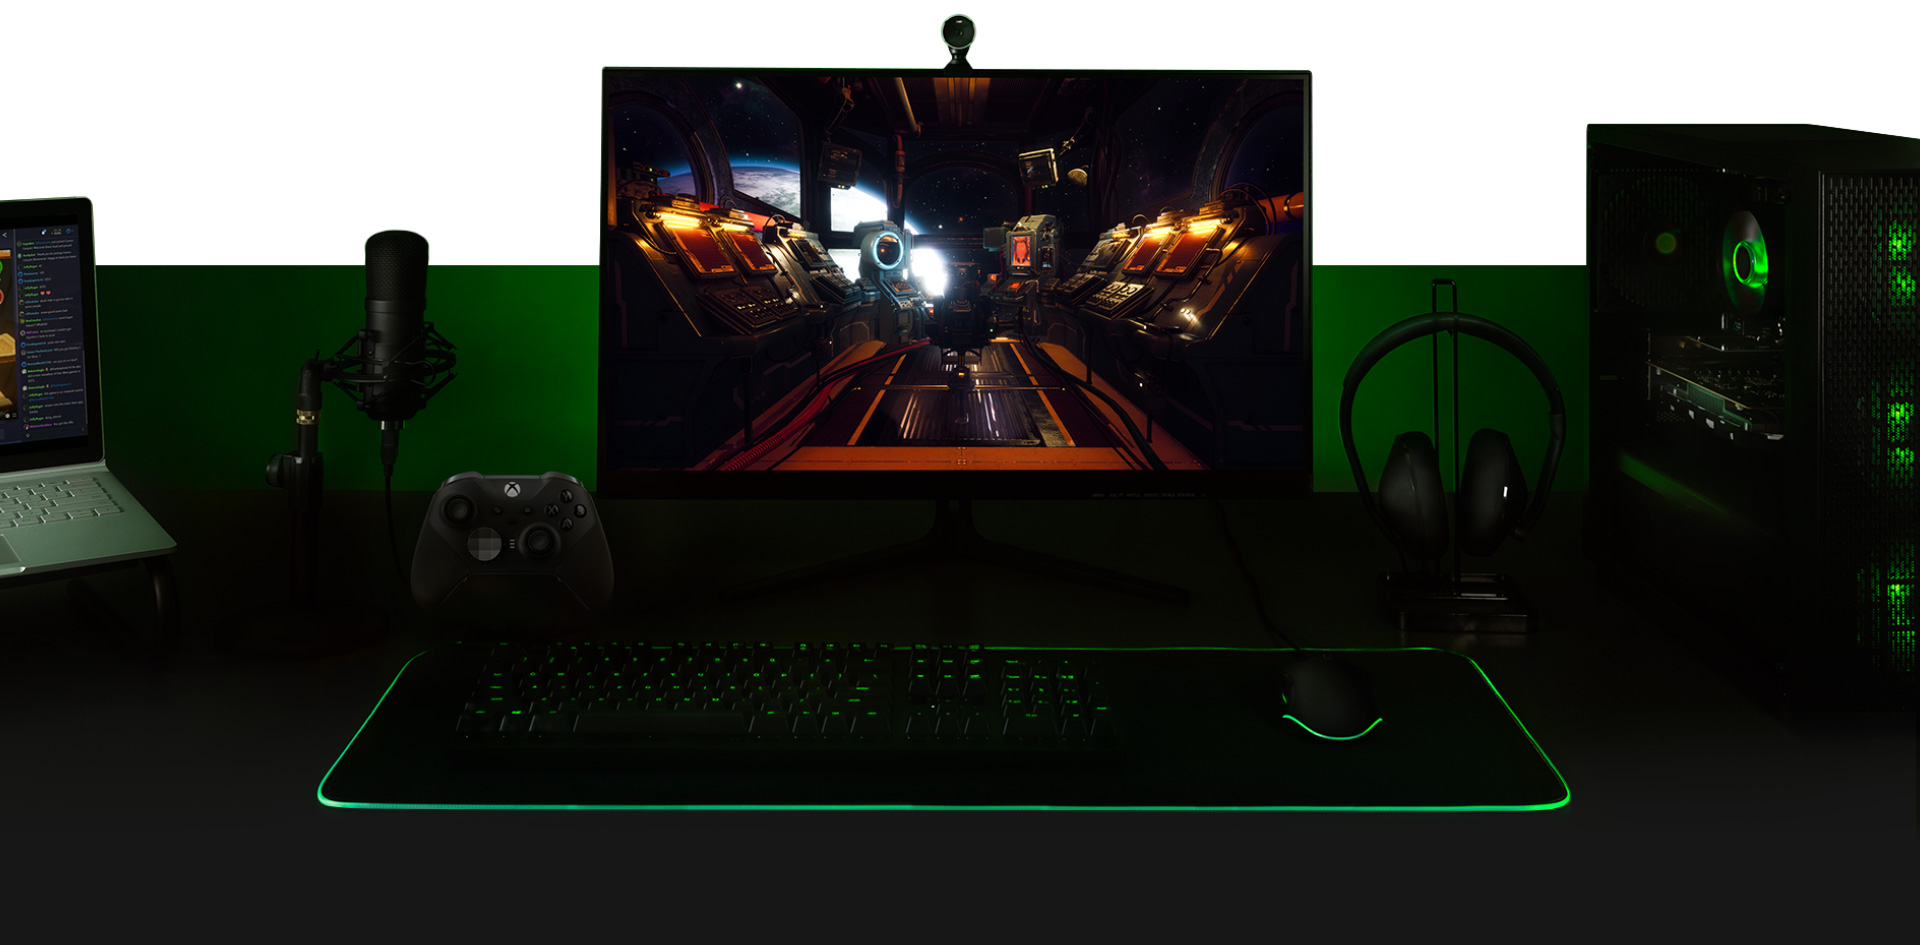 Bureau avec PC, moniteur avec écran du jeu The Outer Worlds, clavier, manette filaire Xbox One, microphone et ordinateur portable, tous interconnectés.